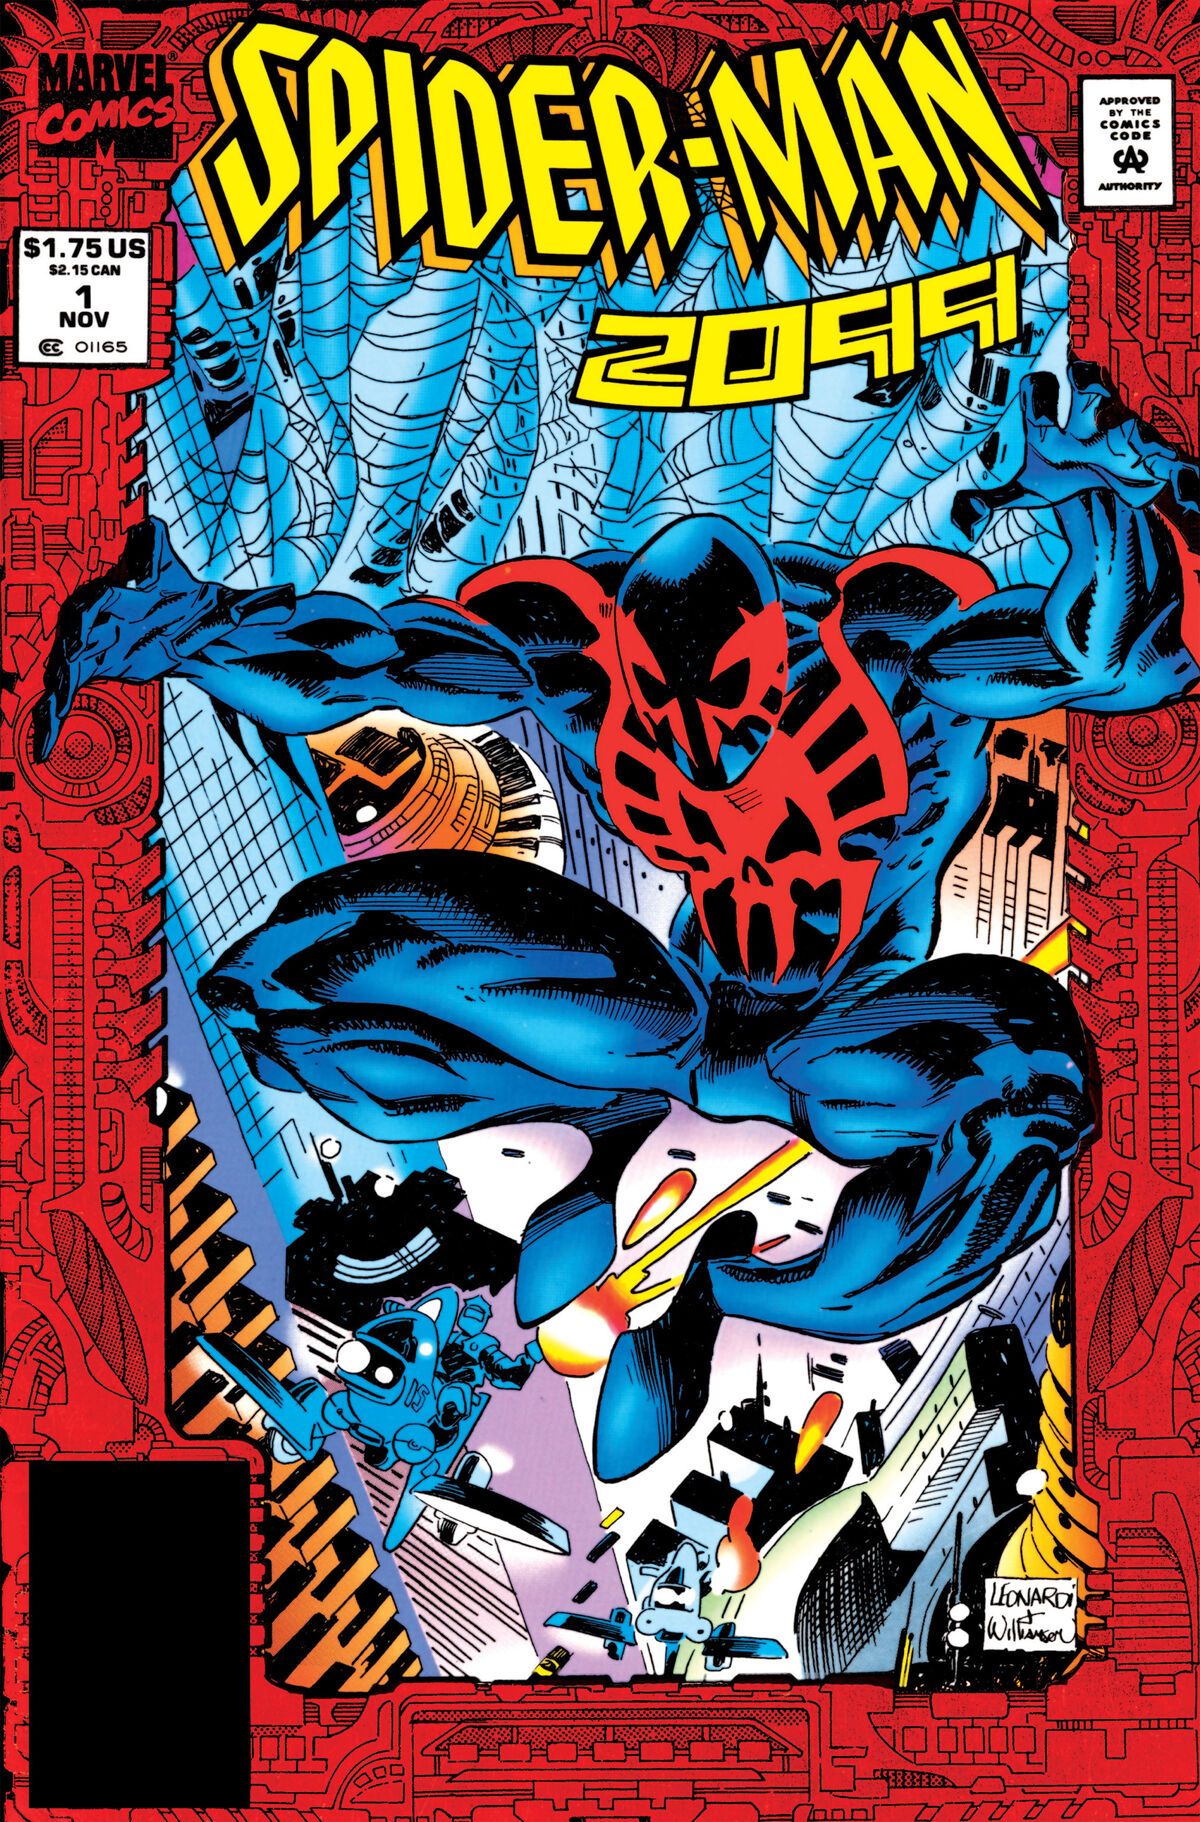 Spider-Man #29 December 1992 Marvel Comics